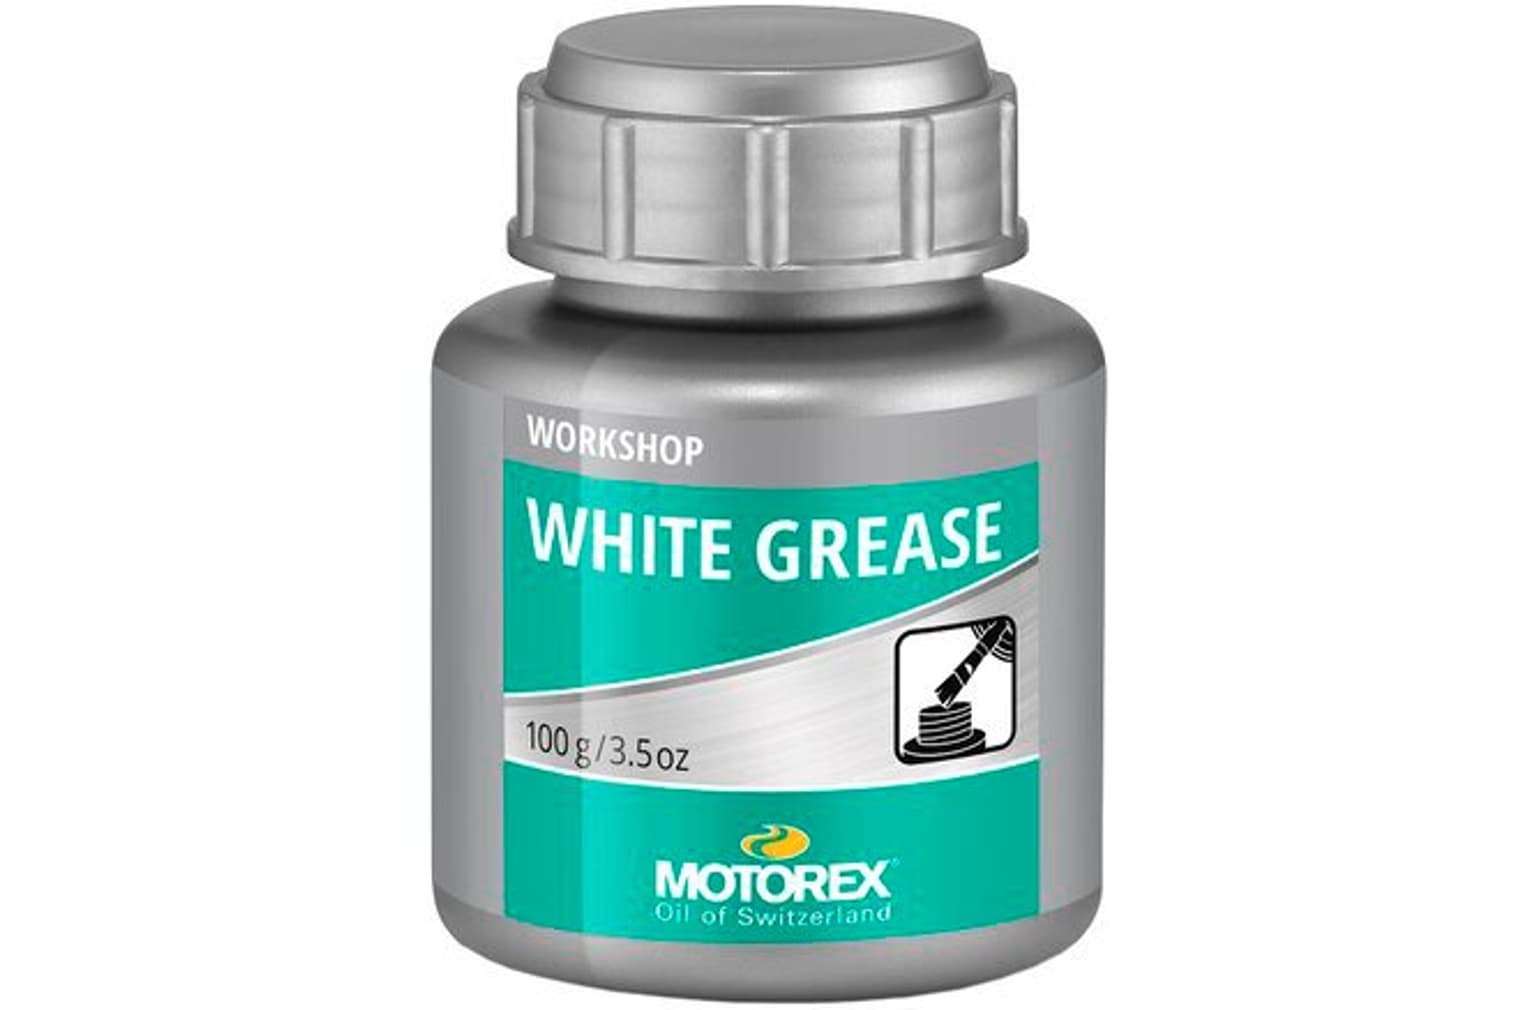 MOTOREX MOTOREX Graisse blanche pour vélo White Grease, bidon de 100 g Lubrifiants 1